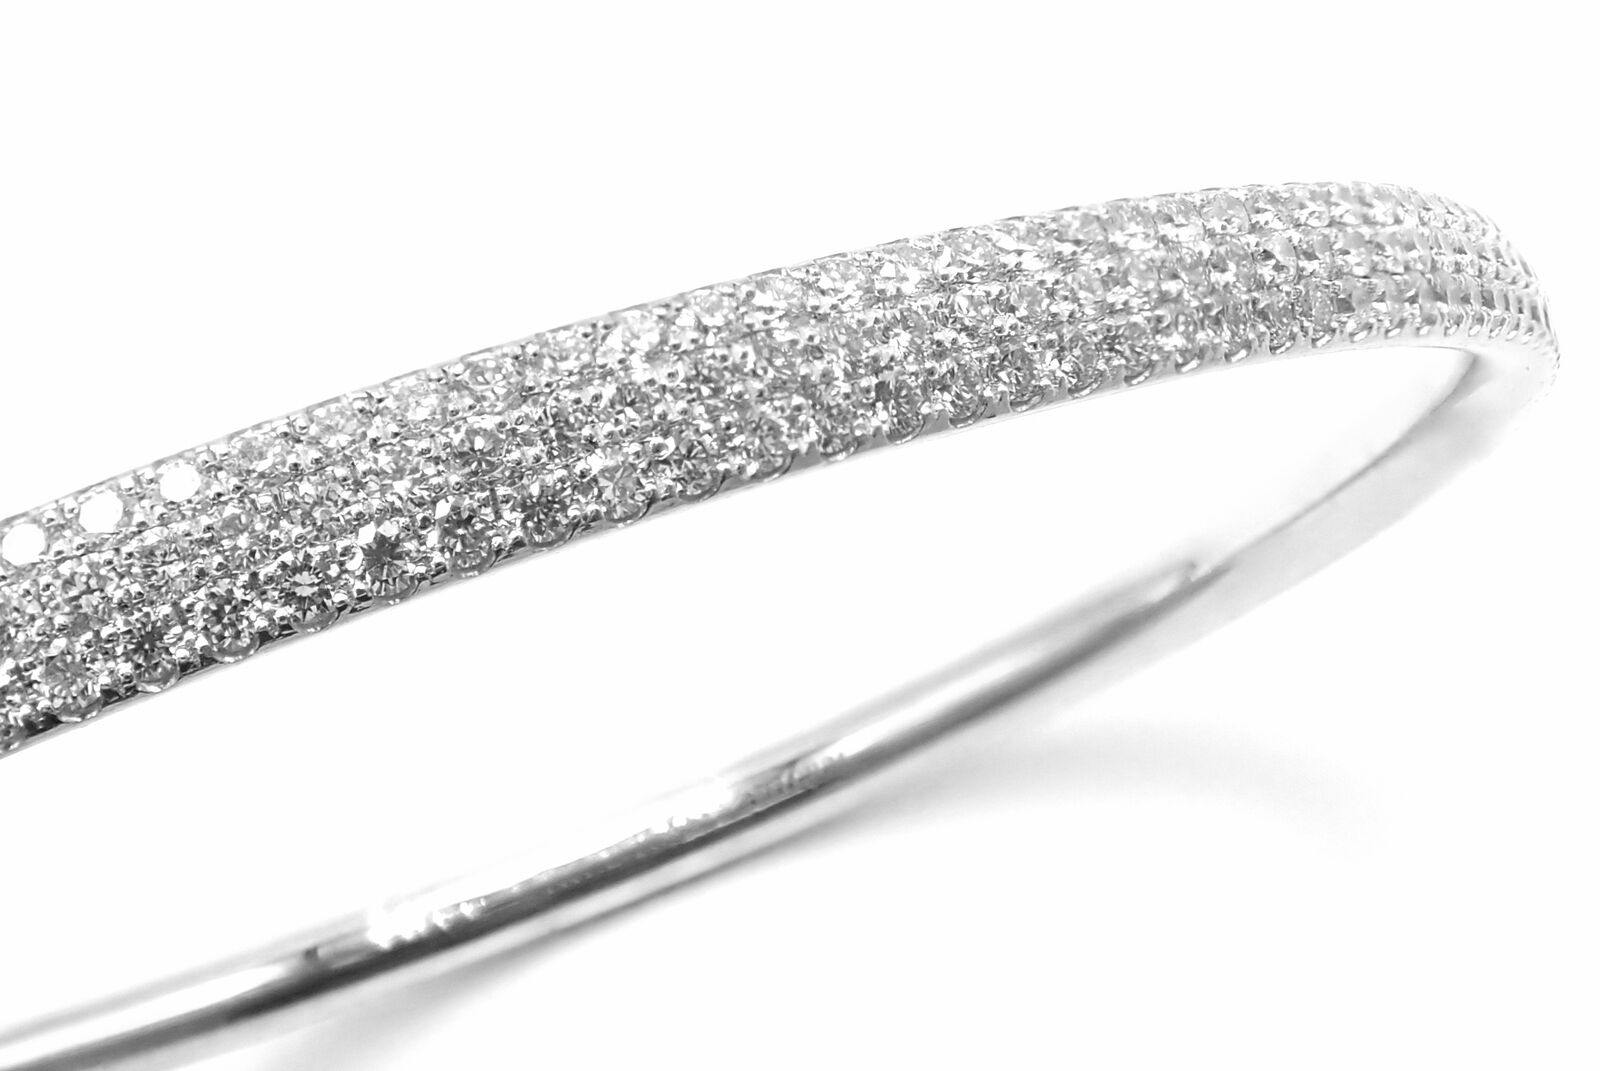 Tiffany Metro Bangle Bracelet in 18K Gold with Diamonds